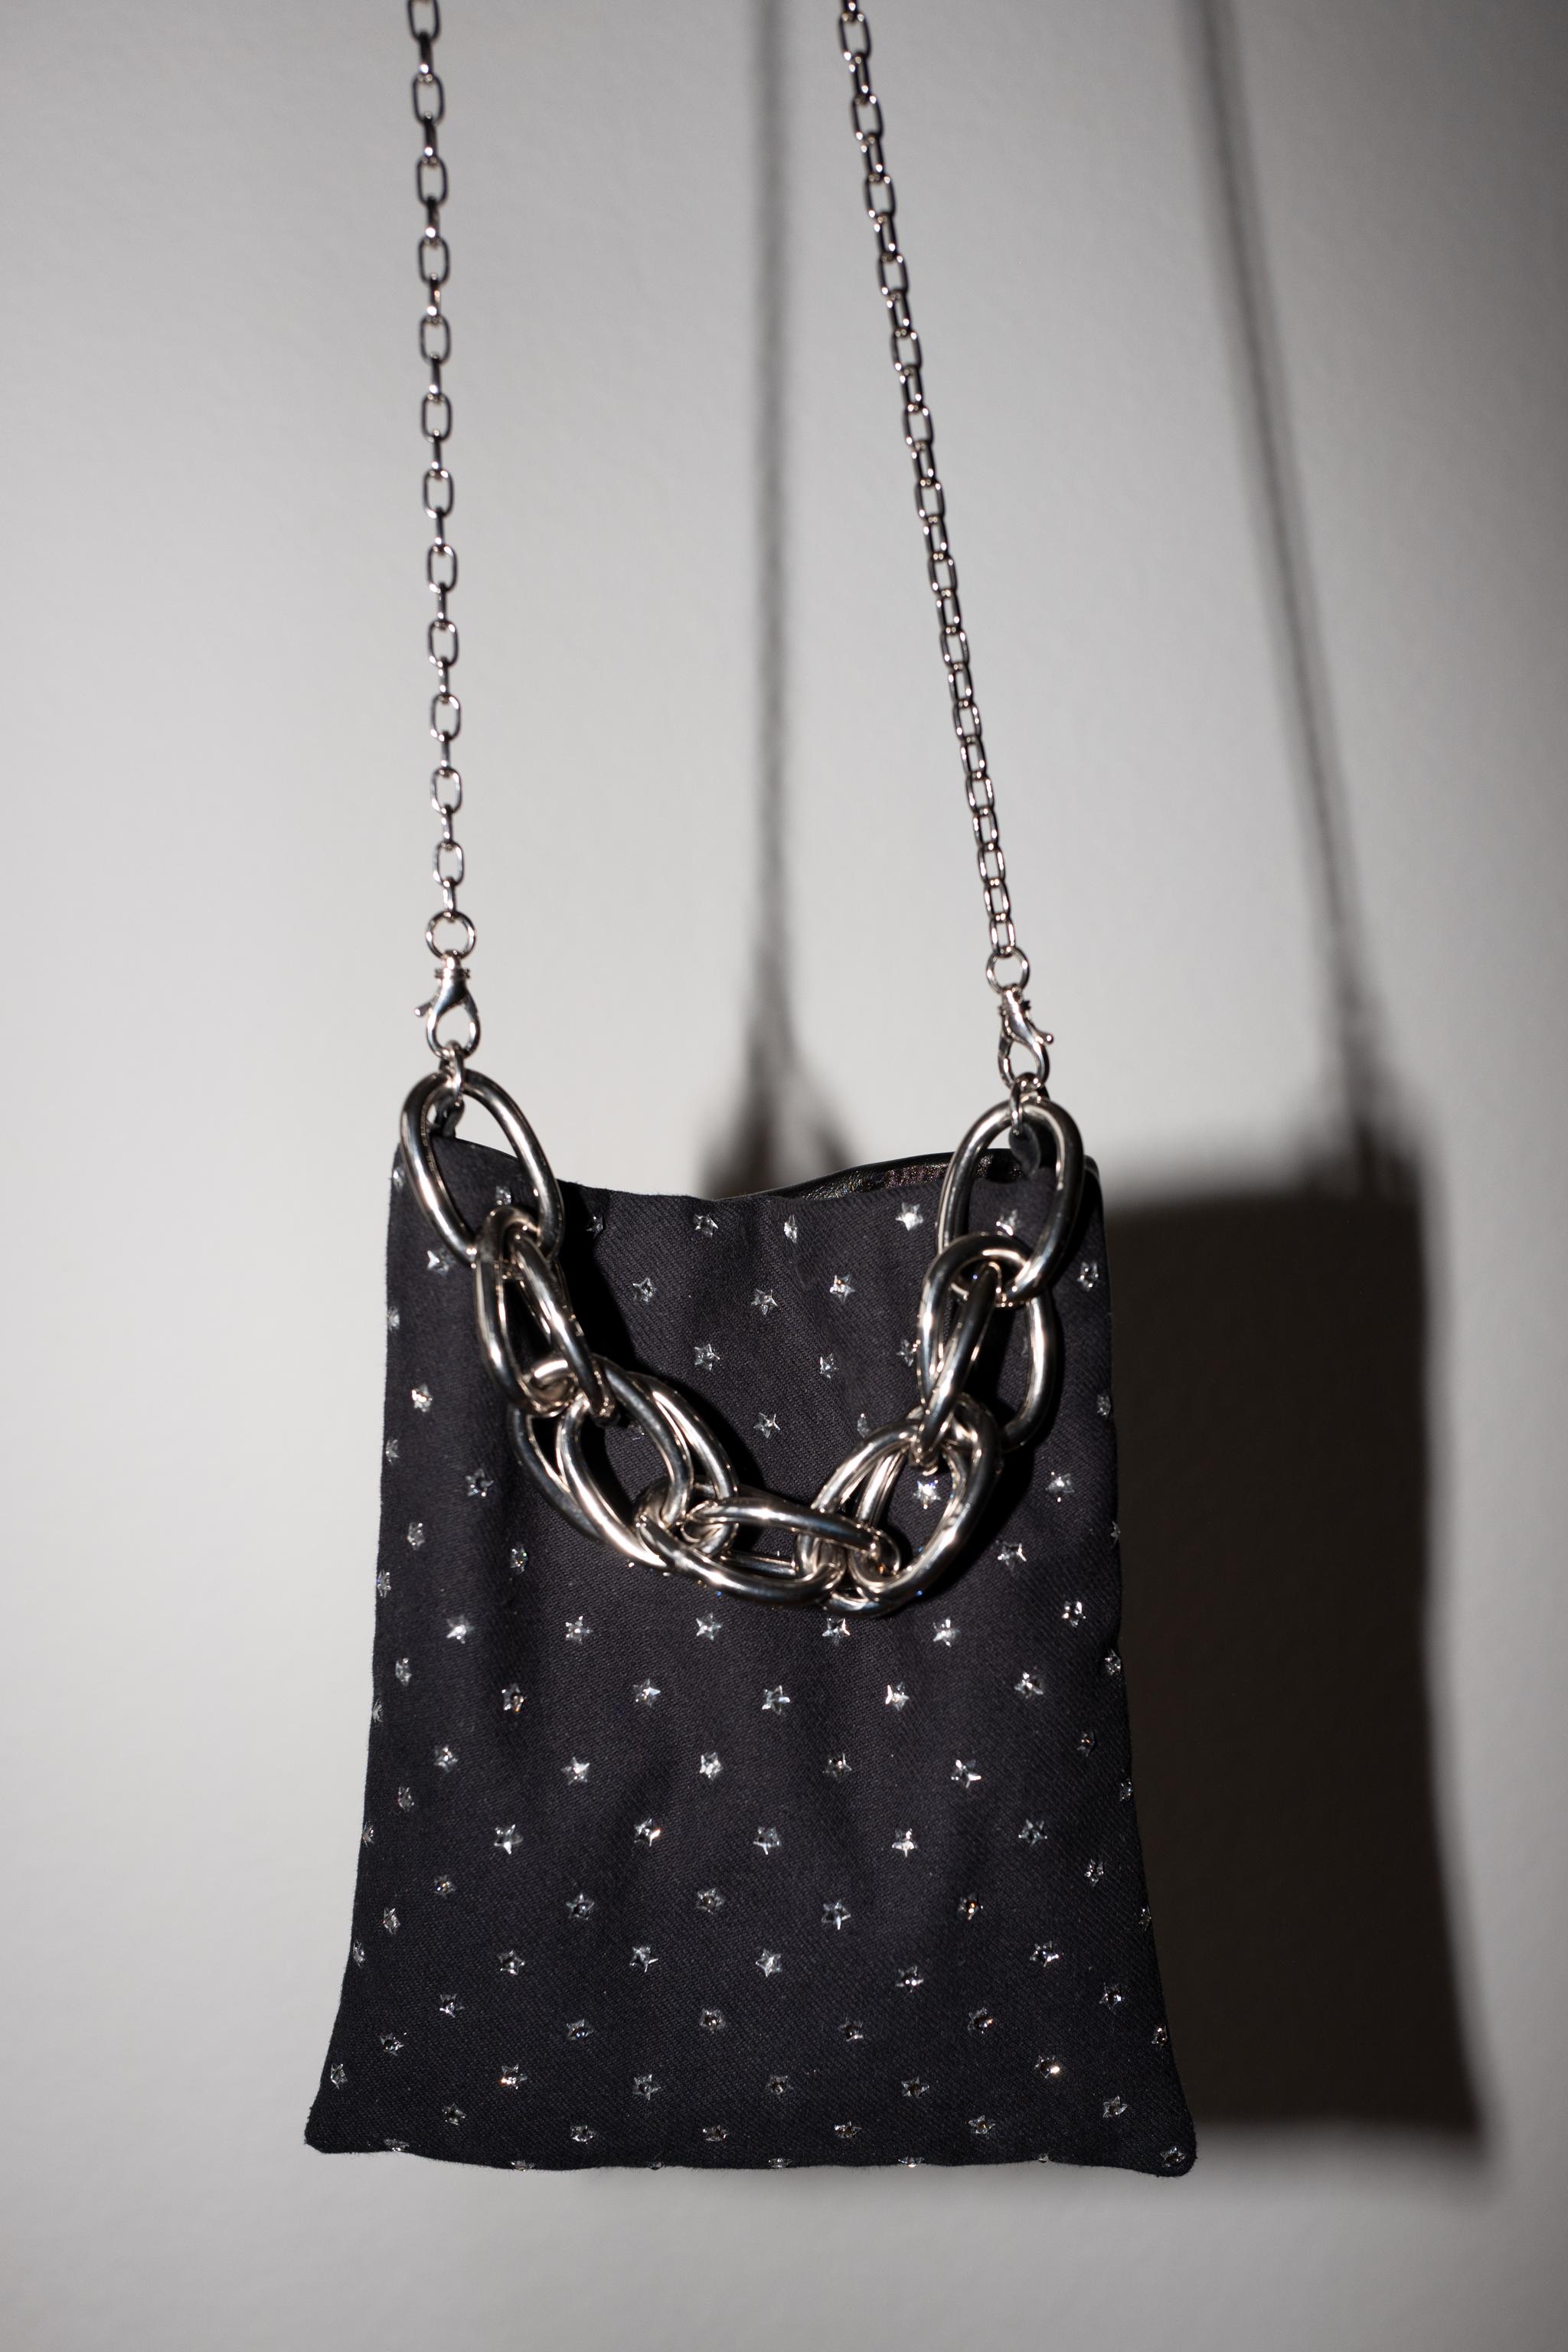 Crystal Star Embellished Black Evening Shoulder Bag Black Leather Chunky Chain 1